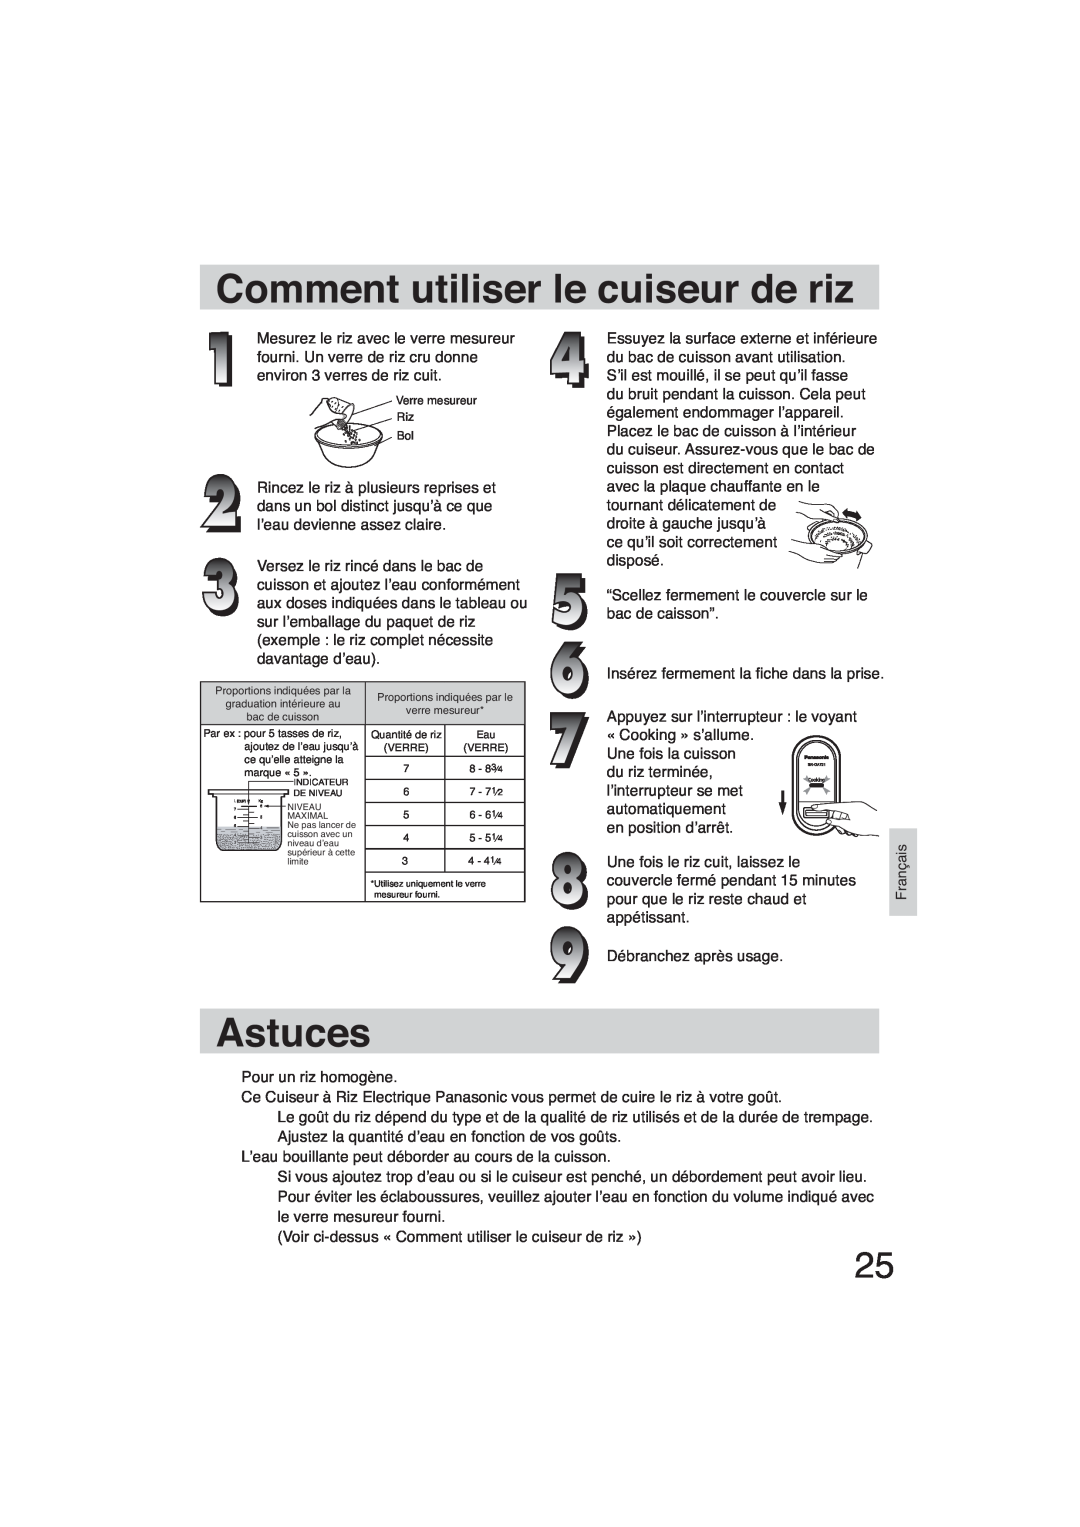 Panasonic SR-GA721 manuel dutilisation Comment utiliser le cuiseur de riz, Astuces, Verre mesureur Riz Bol 